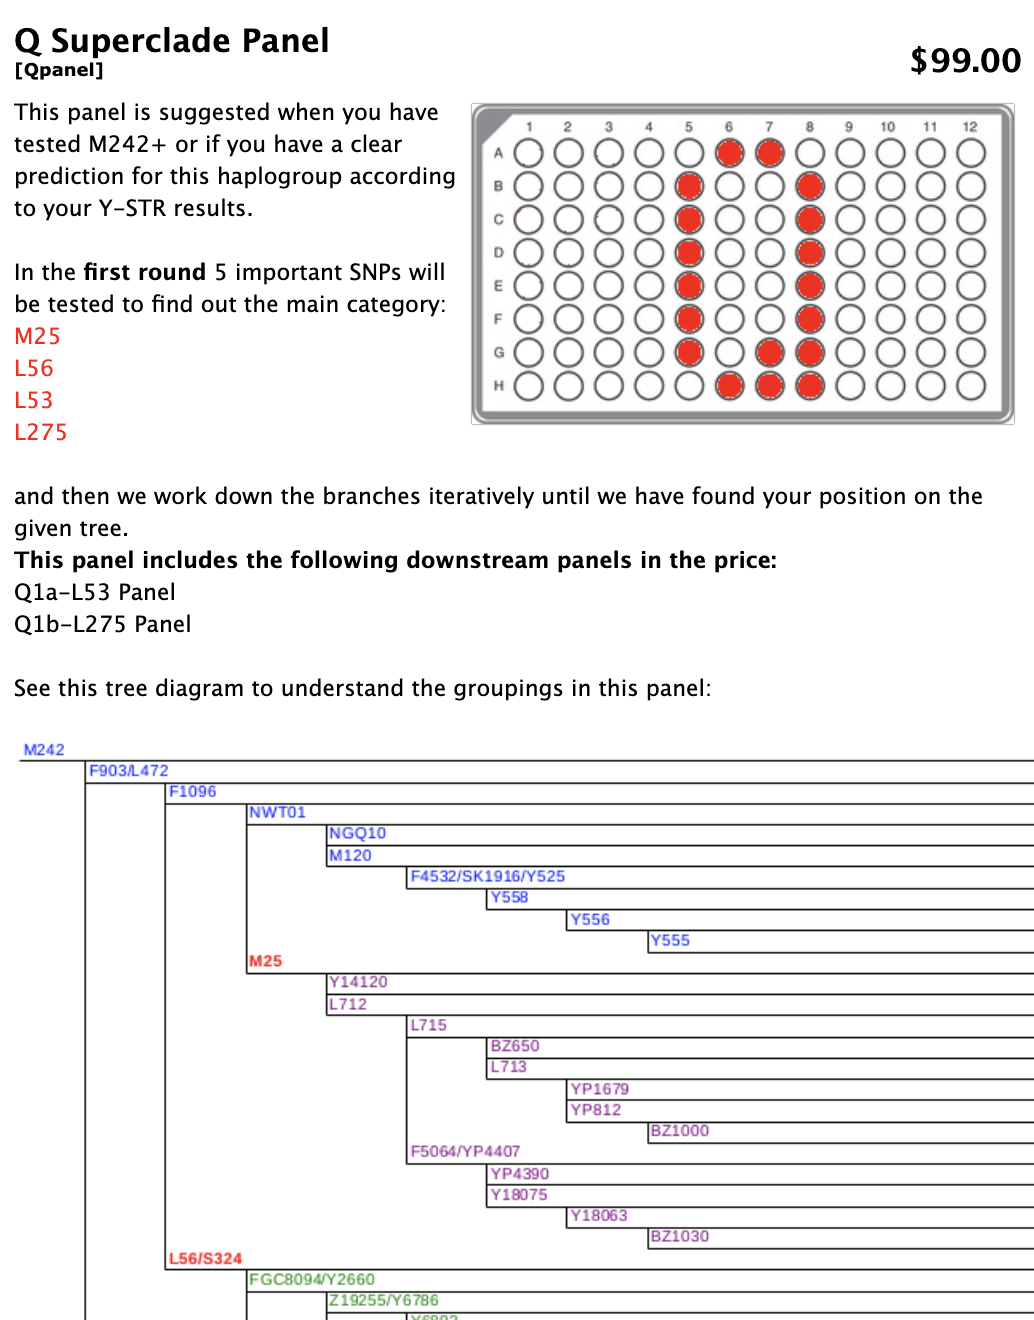 Détails du panneau Superclade Q, avec un diagramme d'un panneau comportant plusieurs cercles colorés en rouge. En bas, un diagramme en arbre expliquant les regroupements dans le panneau.